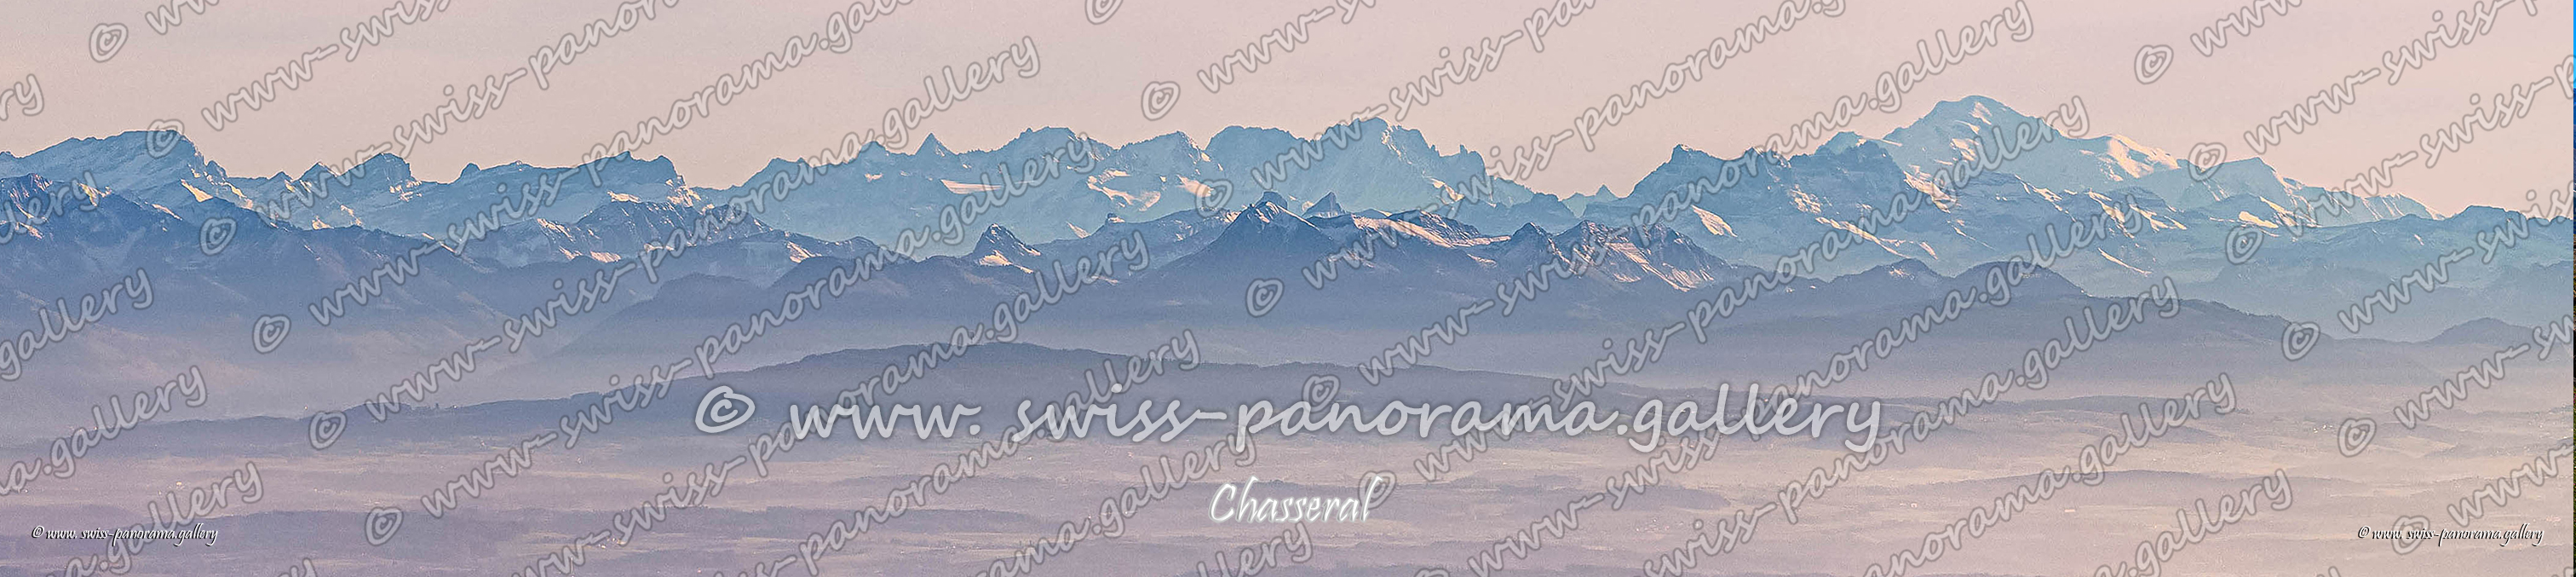 Swiss panorama Chasseral panorama